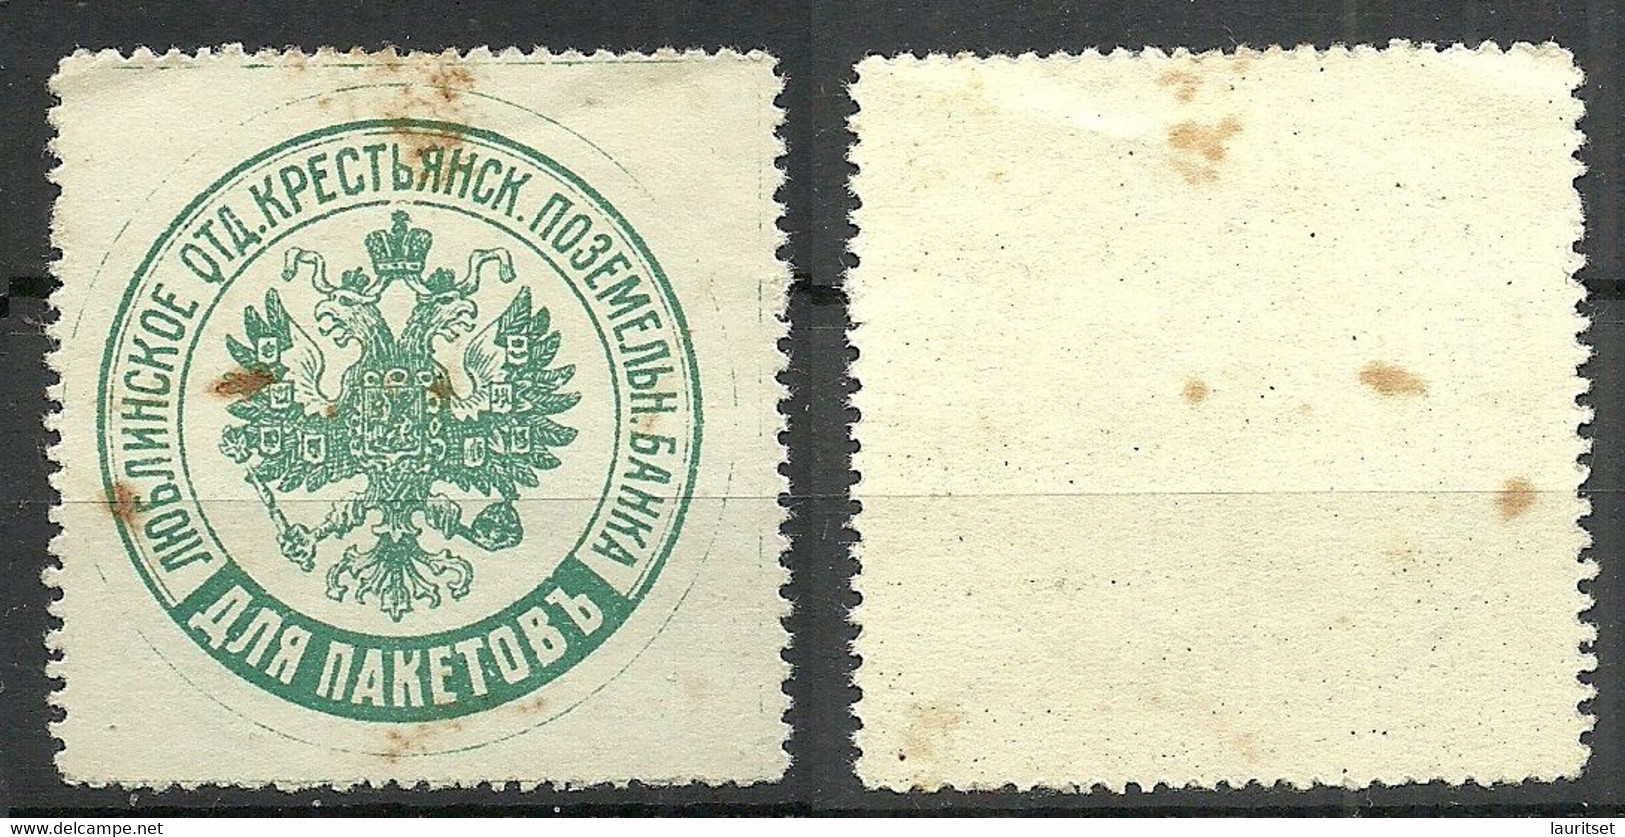 Imperial RUSSLAND RUSSIA Packet Stamp Paketenmarke Original Gum MNH Lublin Bank Poland NB! Rusty Spots! Stockfleckig! - Abarten & Kuriositäten